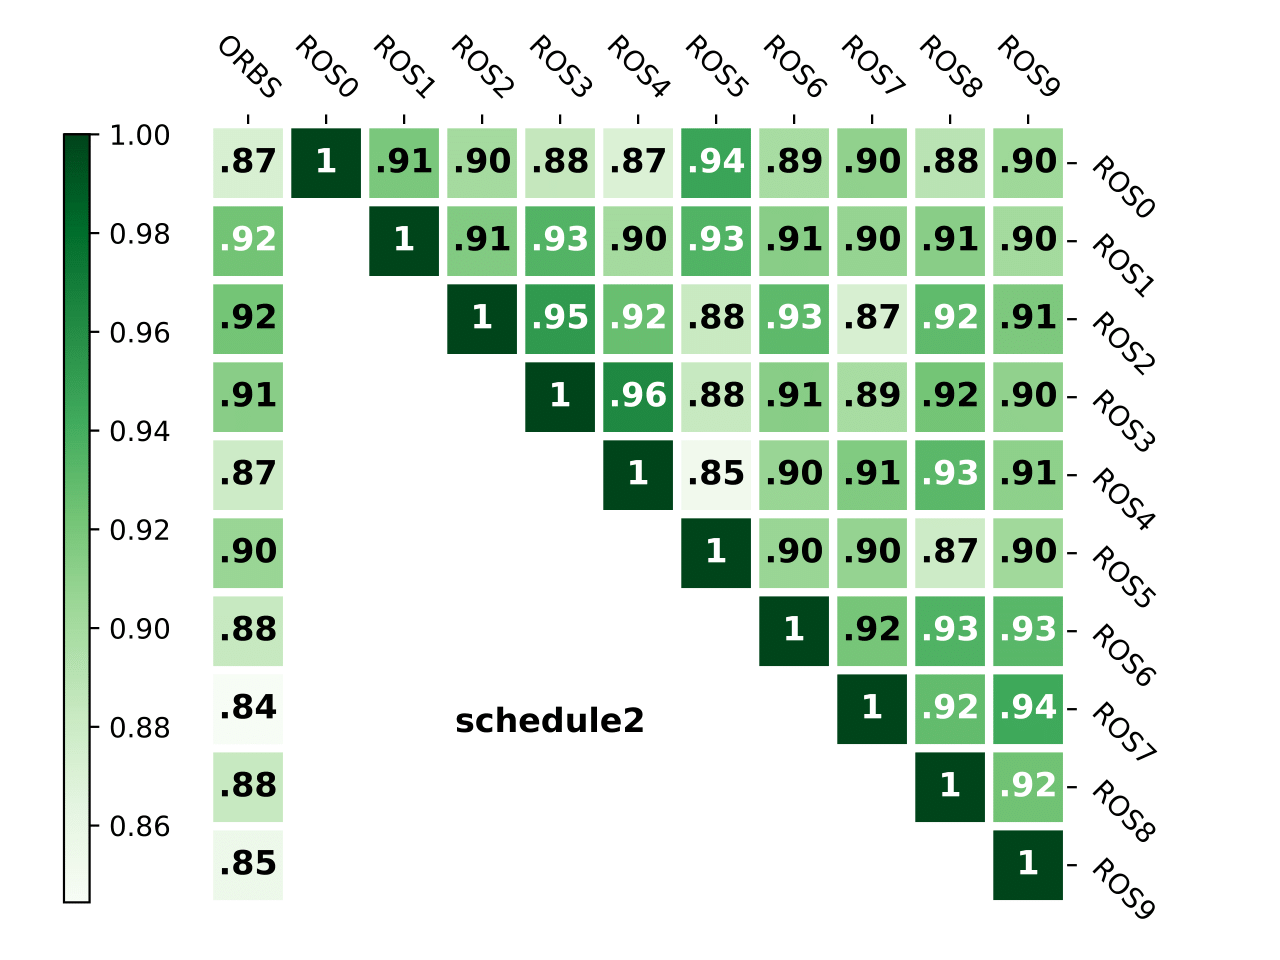 schedule2_criterion1